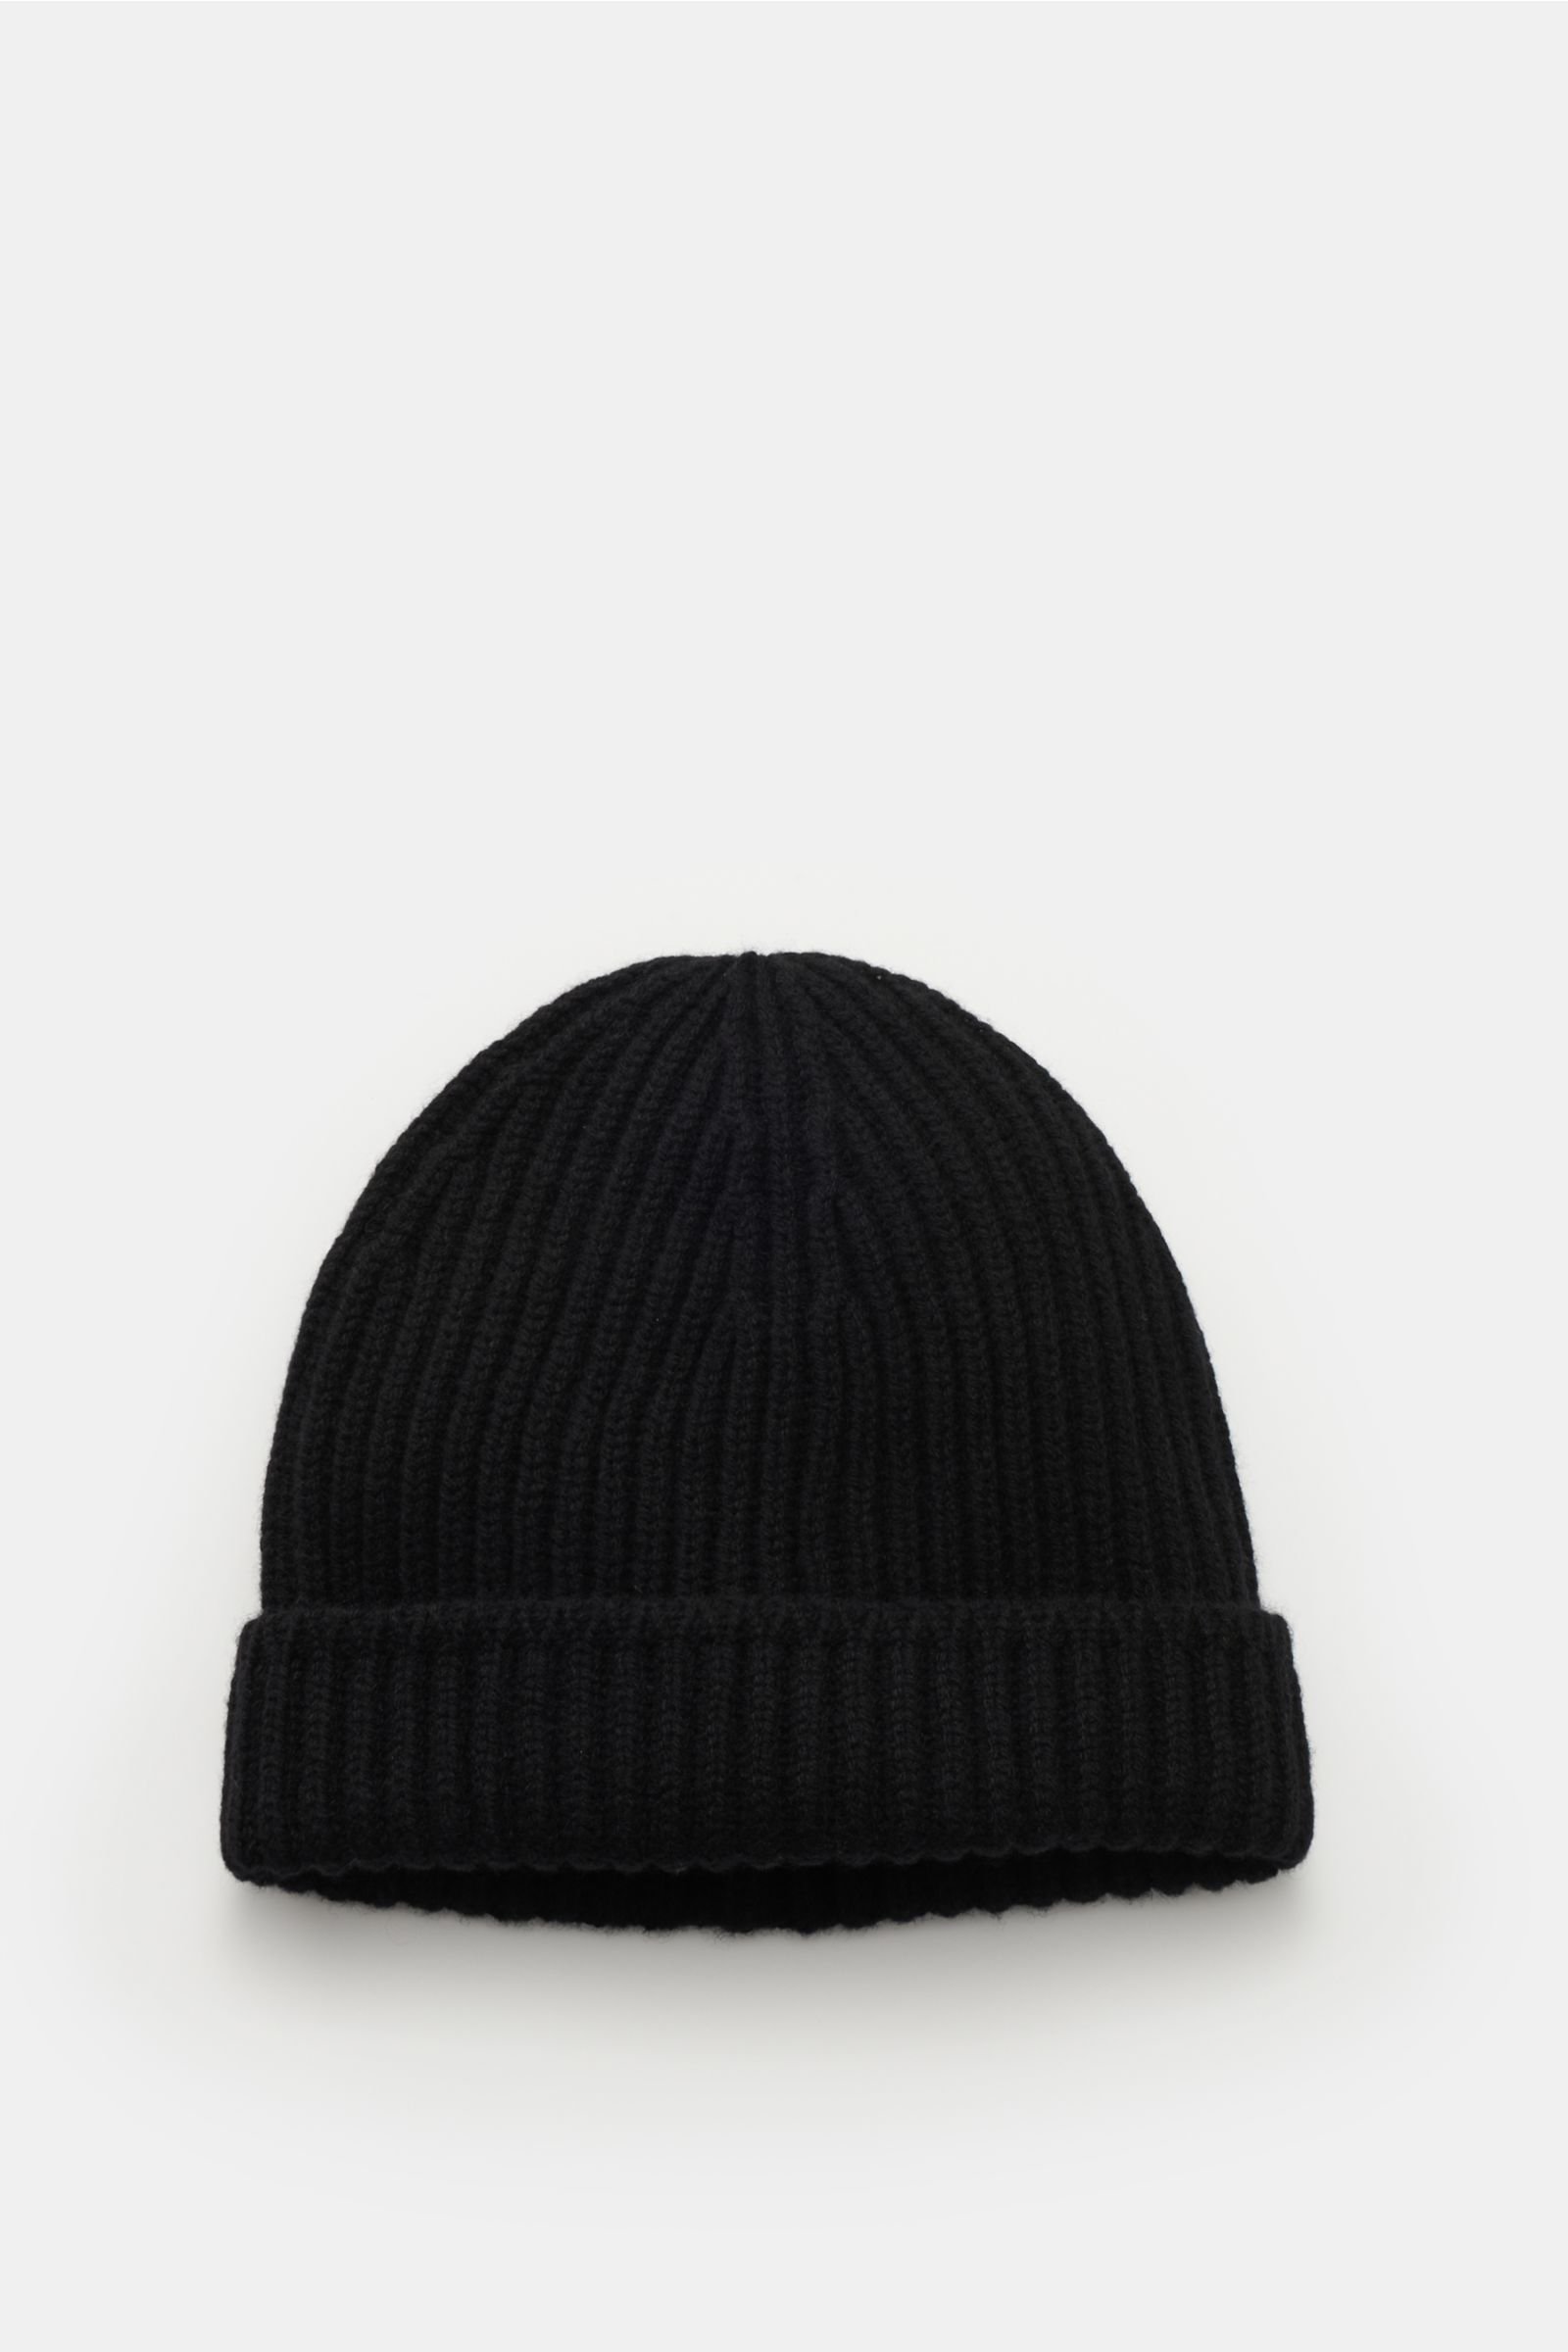 Cashmere Mütze schwarz